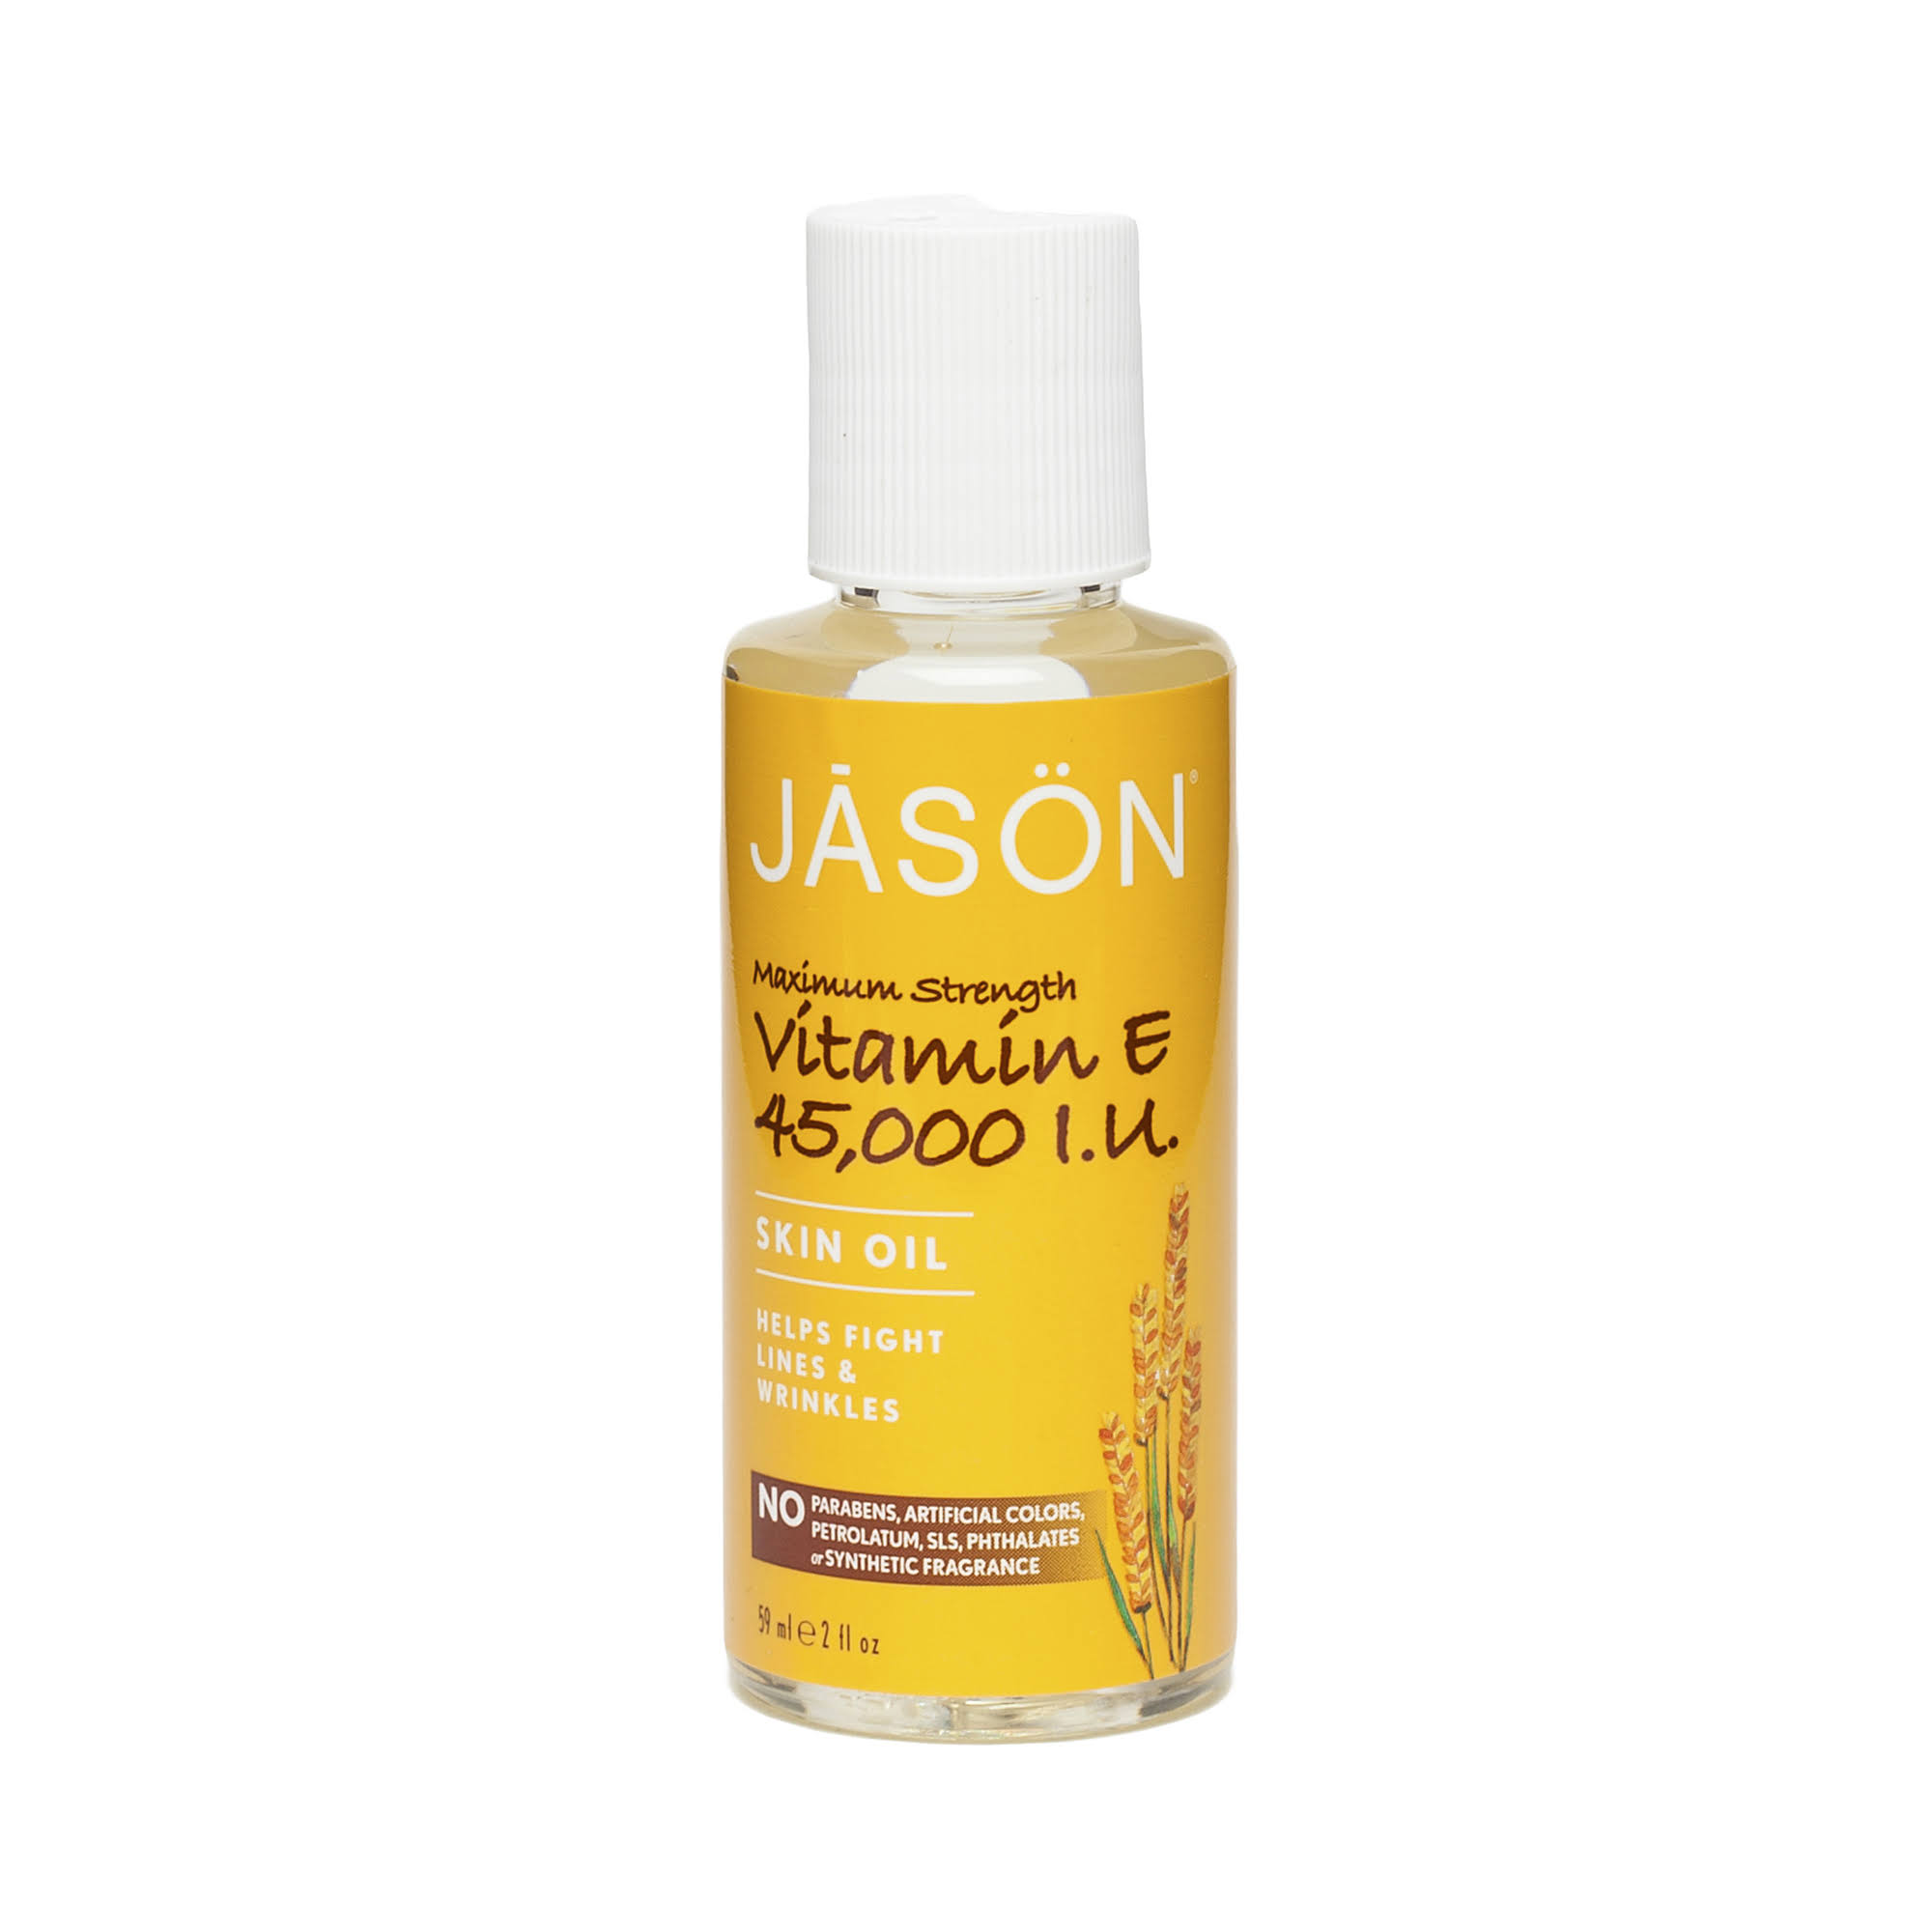 Jason Vitamin E Pure Natural Skin Oil